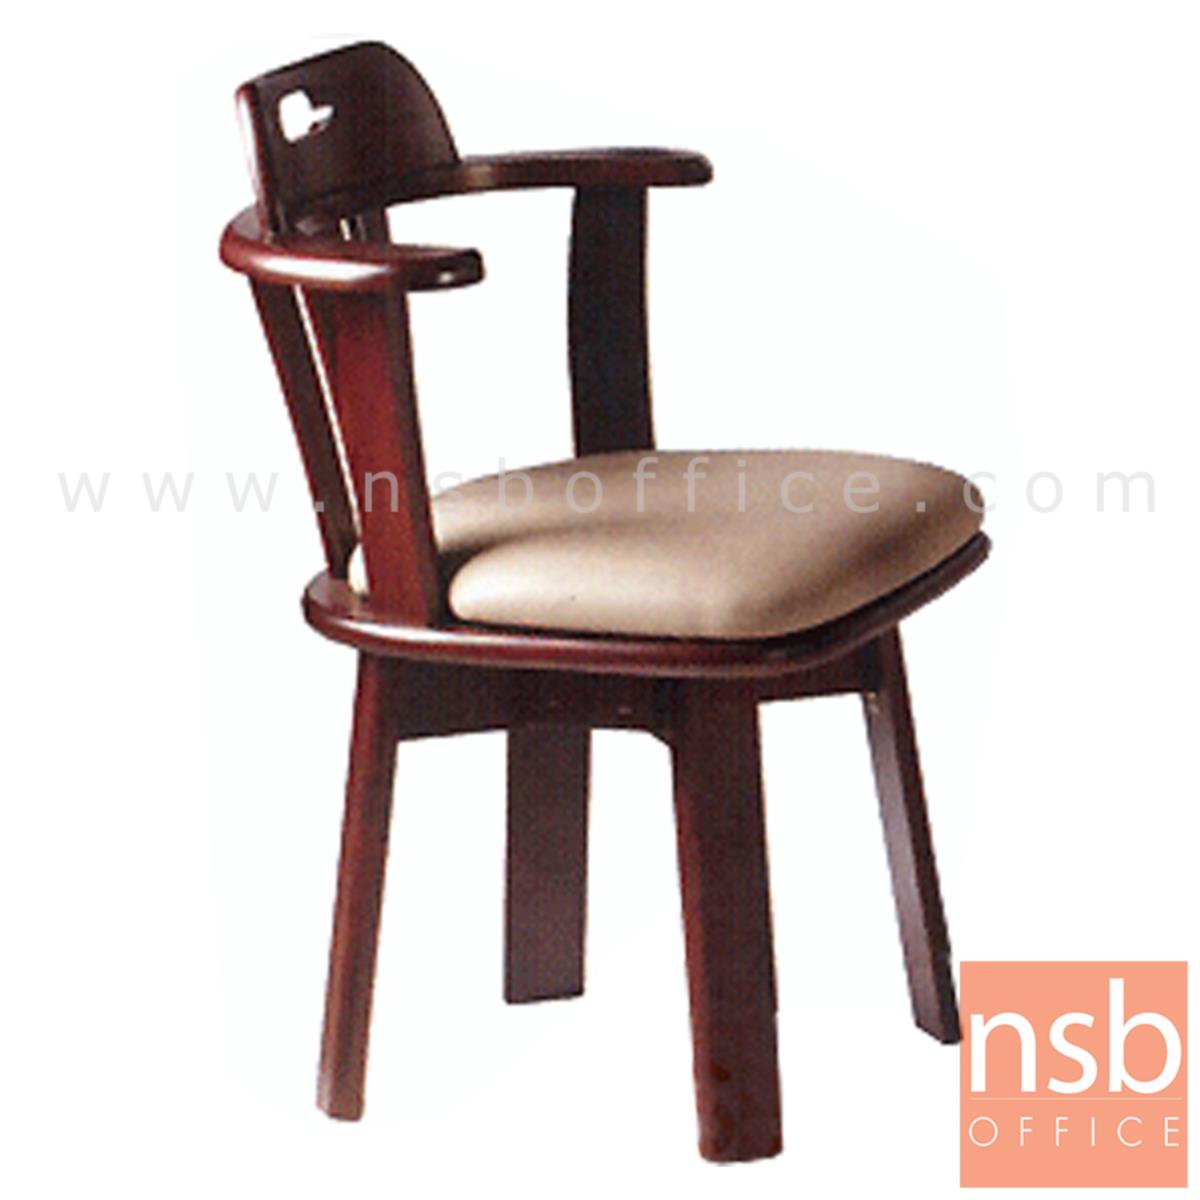 G14A051:เก้าอี้ไม้ยางพาราที่นั่งหุ้มหนังเทียม รุ่น Cyril (ไซริล)  ขาไม้ (เบาะหมุน)